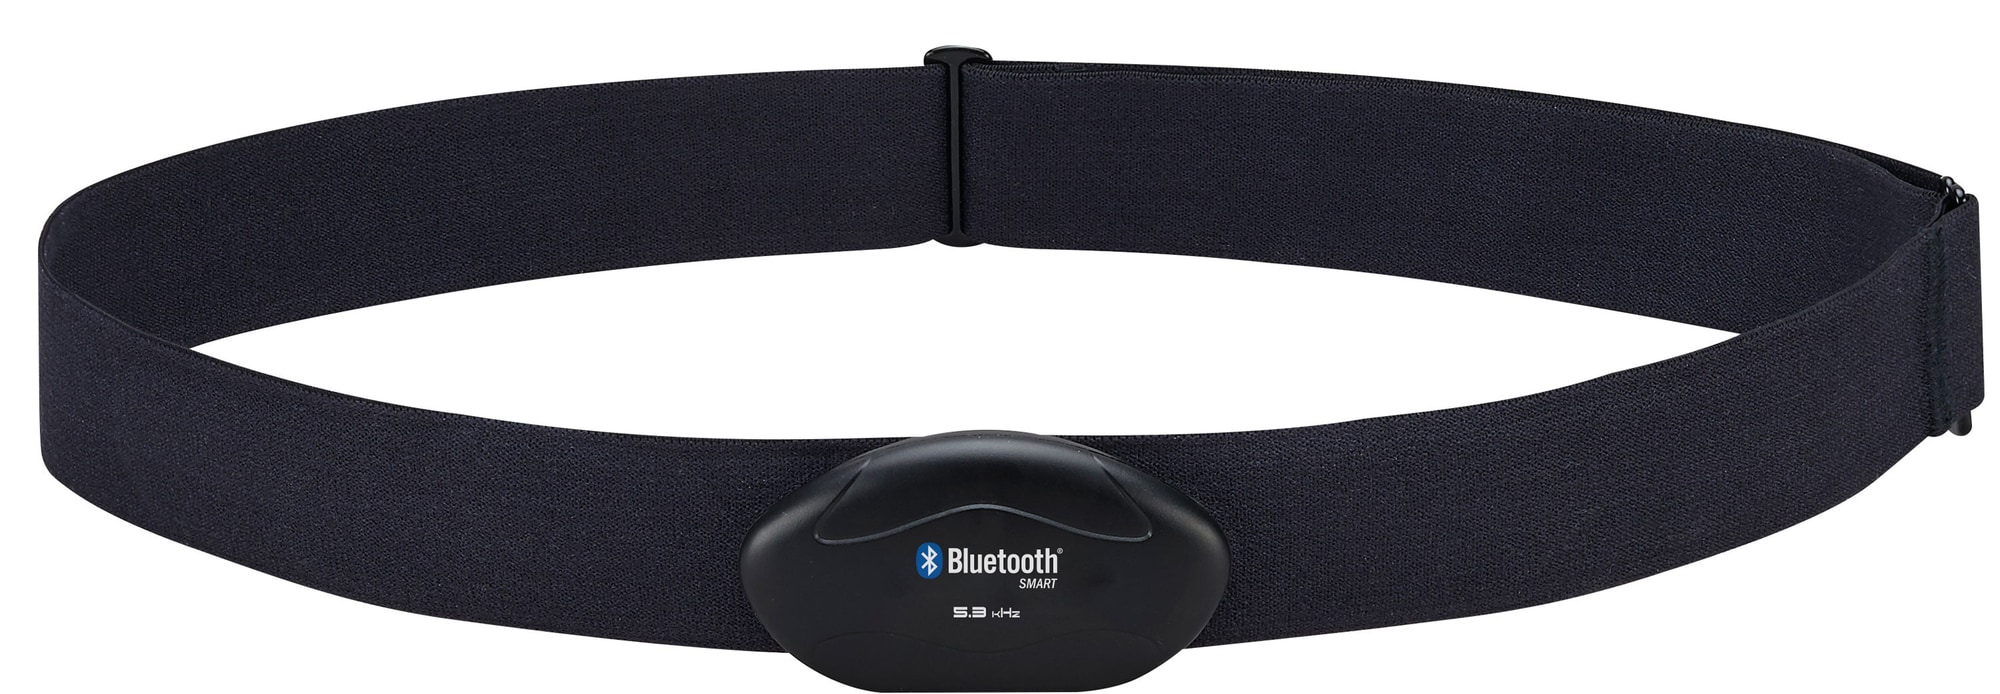 Goji Bluetooth pulsbælte - Fitnessudstyr og tilbehør - Elgiganten